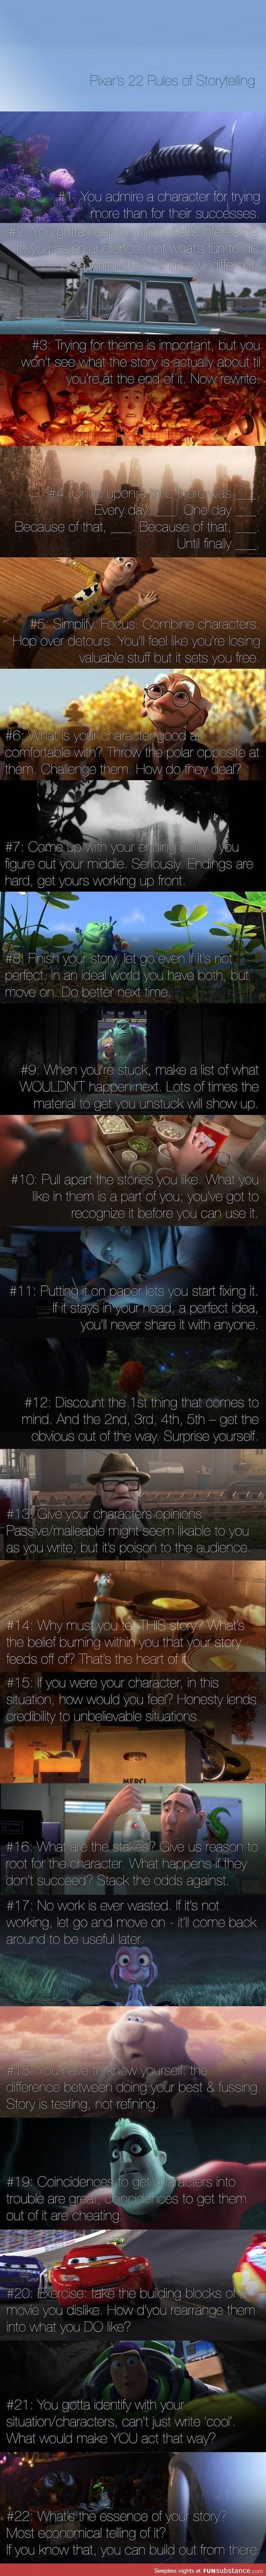 Rules of Pixar